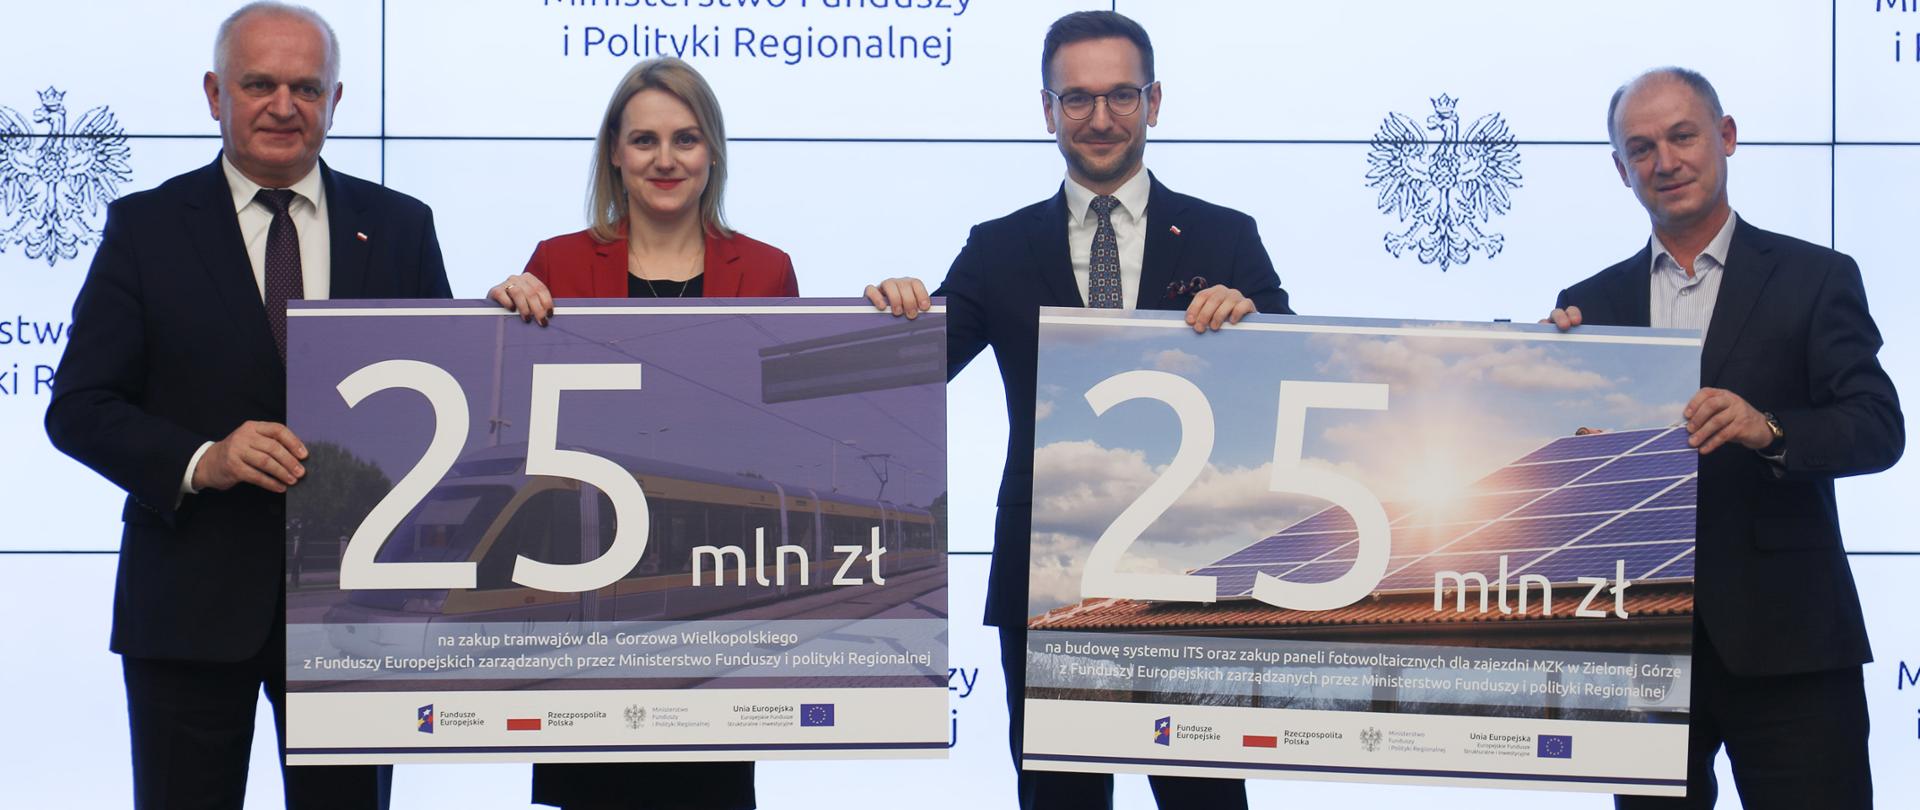 Cztery osoby trzymają dwie duże grafiki z napisami 25 mln zł. Drugi od prawej wiceminister Waldemar Buda.